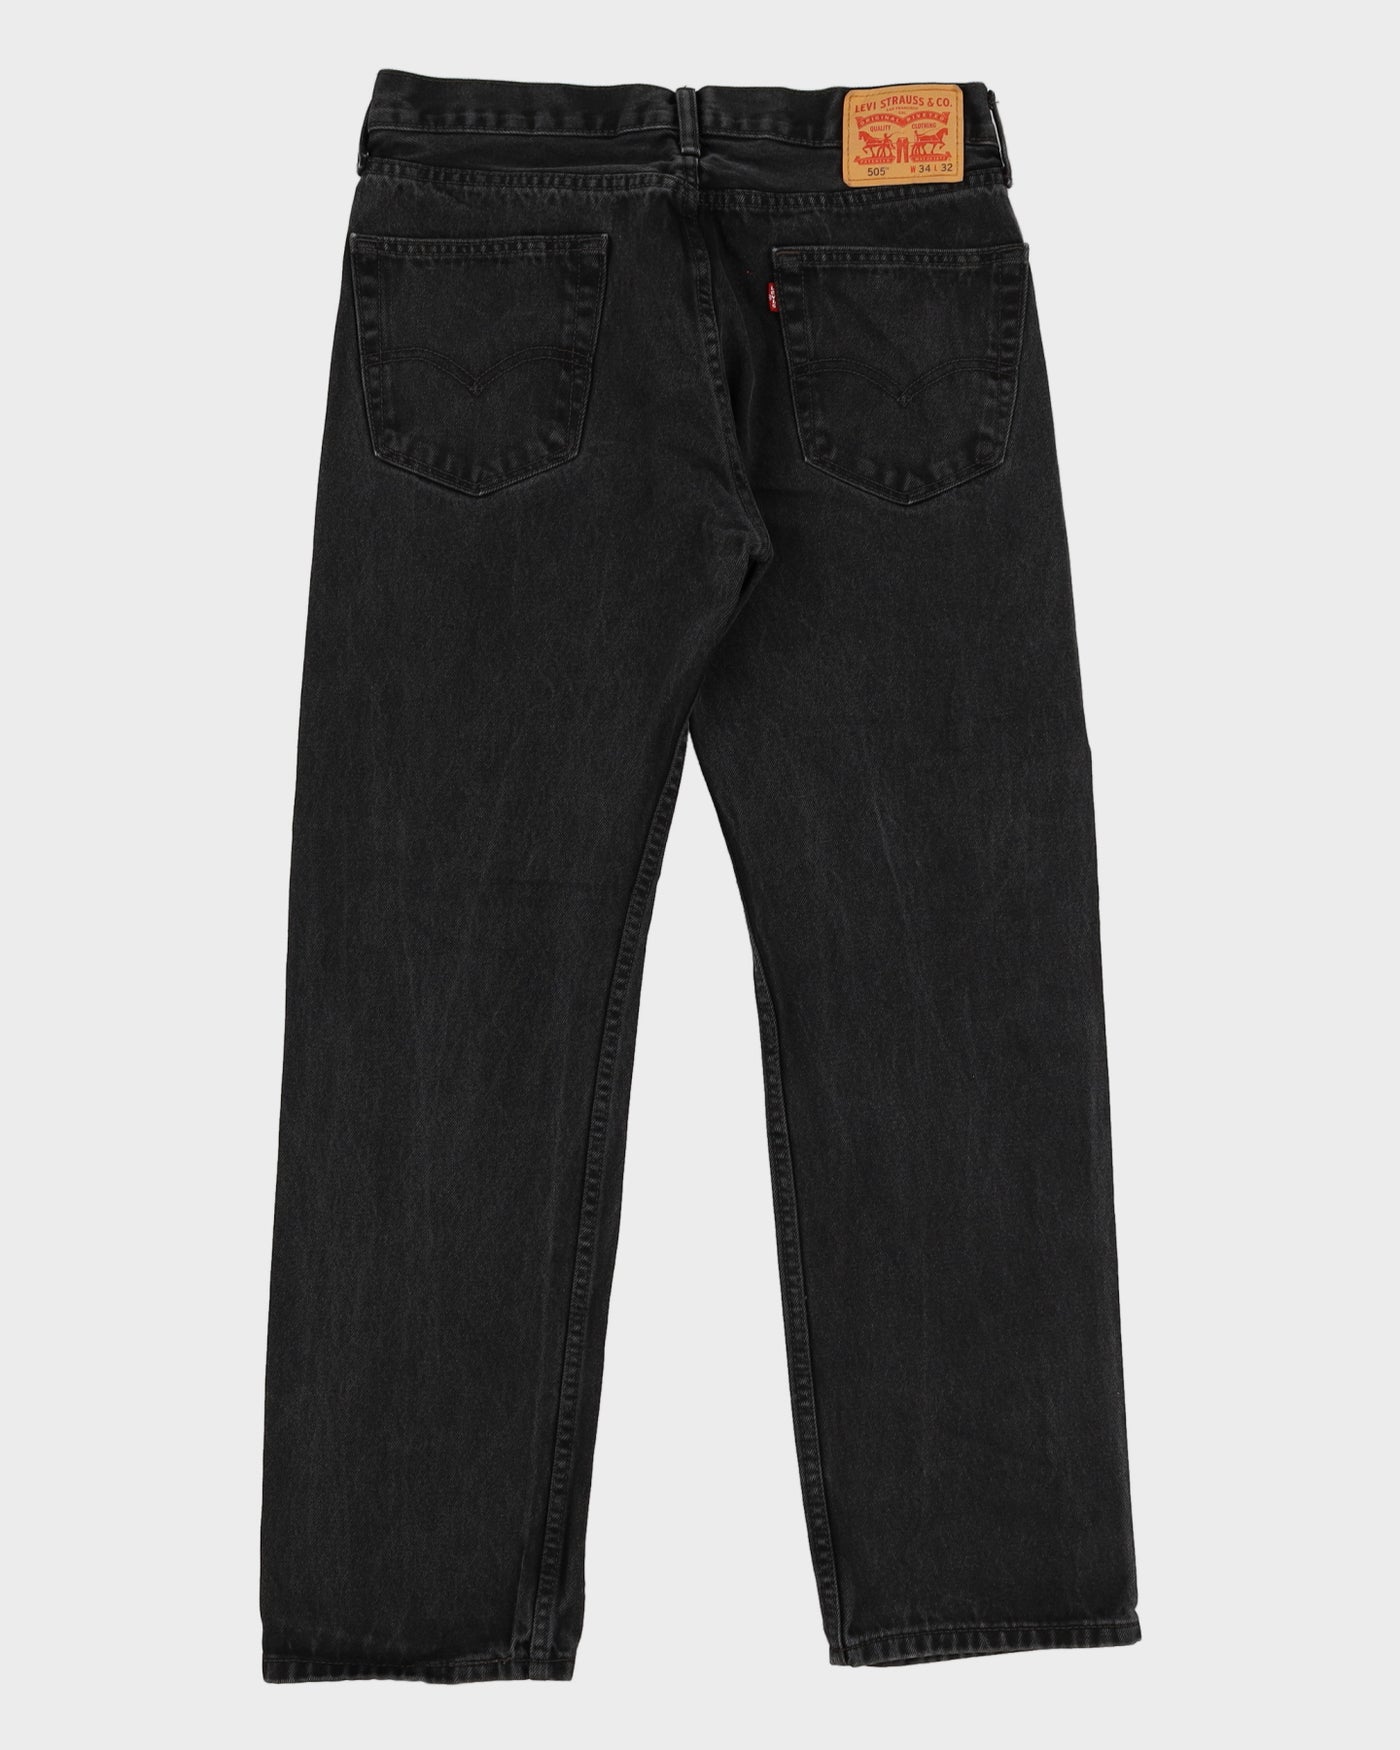 Levi's 501 Dark Wash Jeans - W34 L31